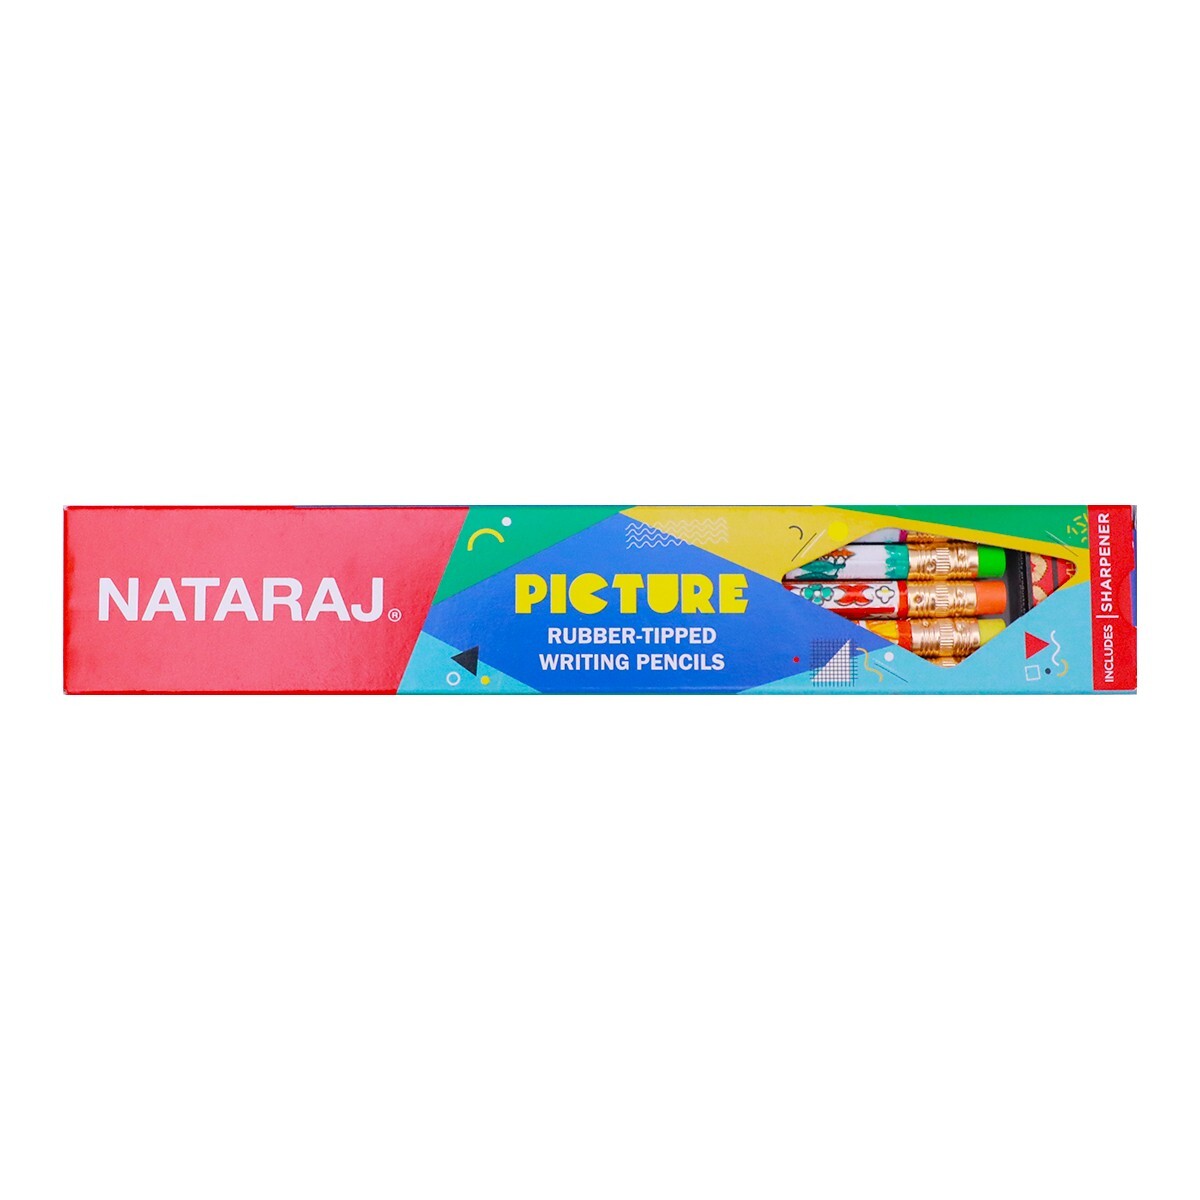 Nataraj Picture Rubber Tipped Pencil 10s-201152002